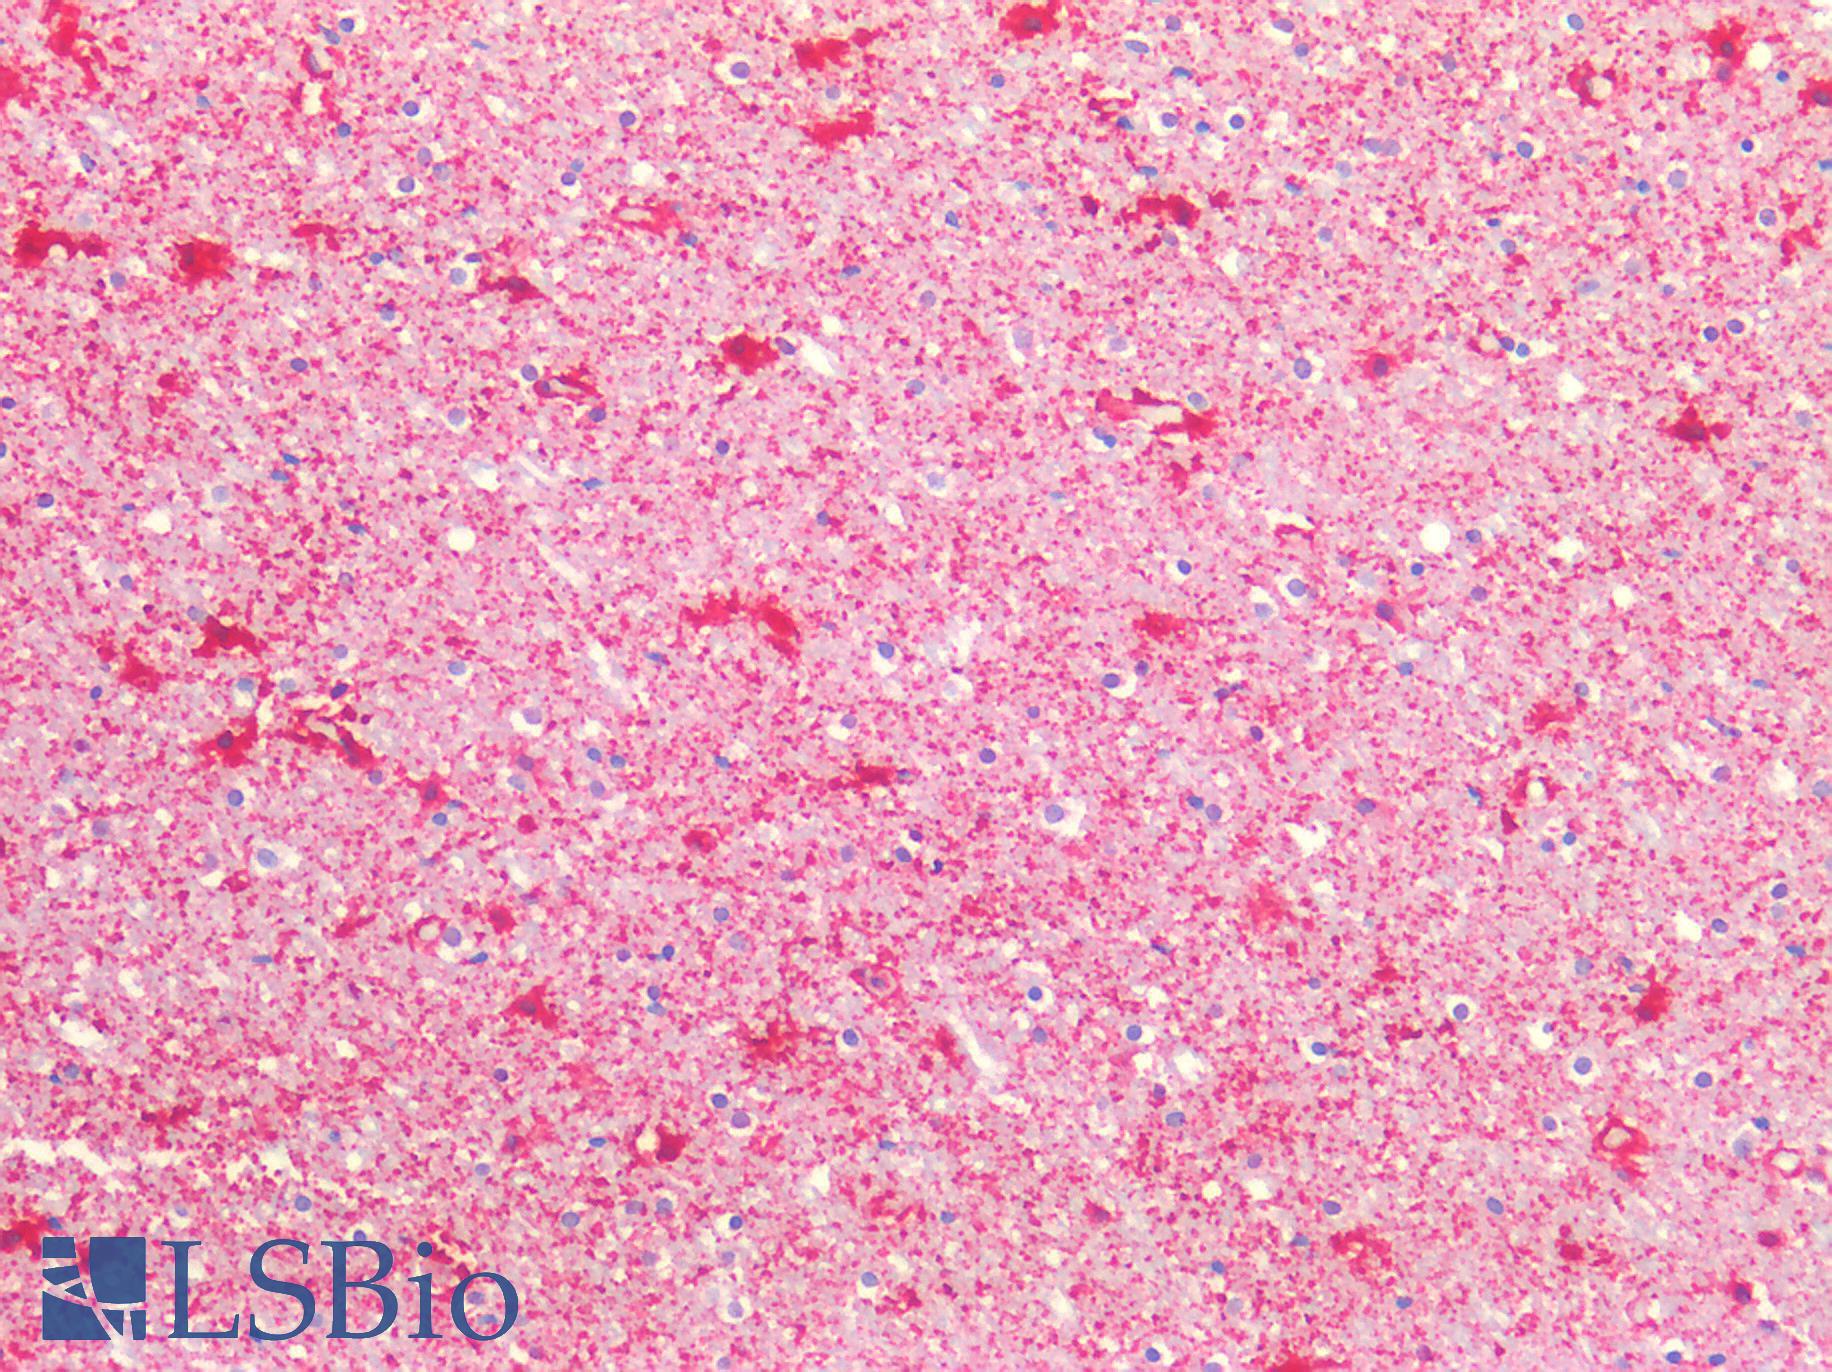 ENO1 / Alpha Enolase Antibody - Human Brain. Cortex: Formalin-Fixed, Paraffin-Embedded (FFPE)